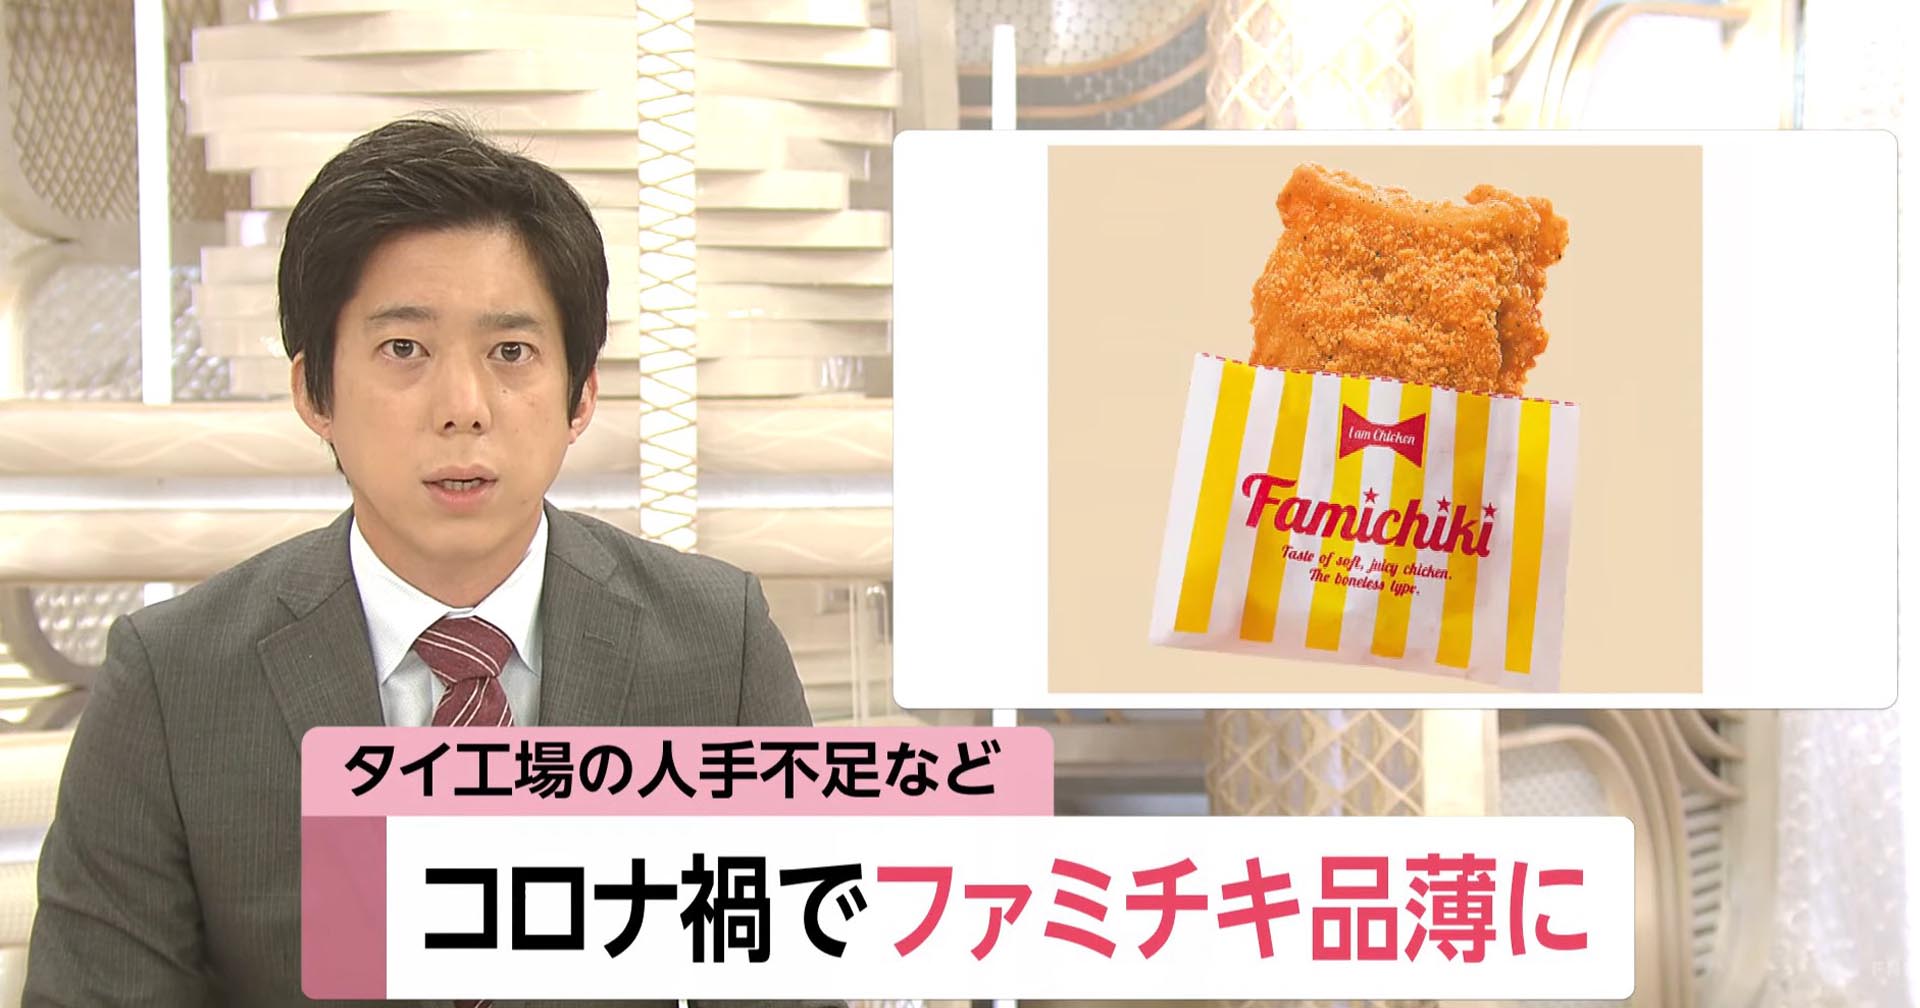 ร้านสะดวกซื้อในประเทศญี่ปุ่นกำลังประสบปัญหาขาดแคลนไก่ทอด